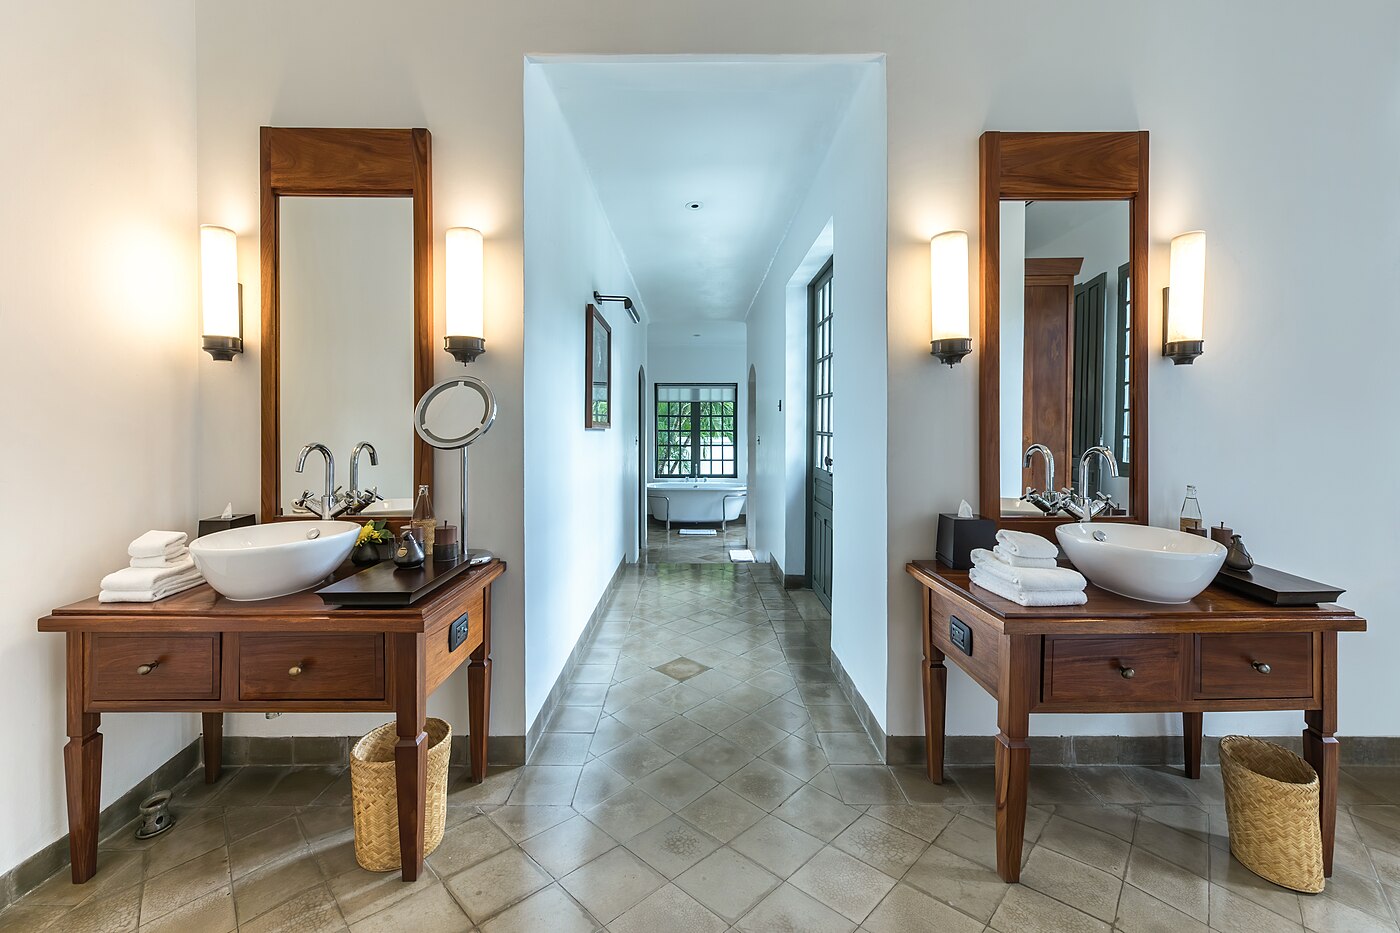 Bathroom of Khan Pool Suite in Amantaka luxury Resort & Hotel in Luang Prabang Laos